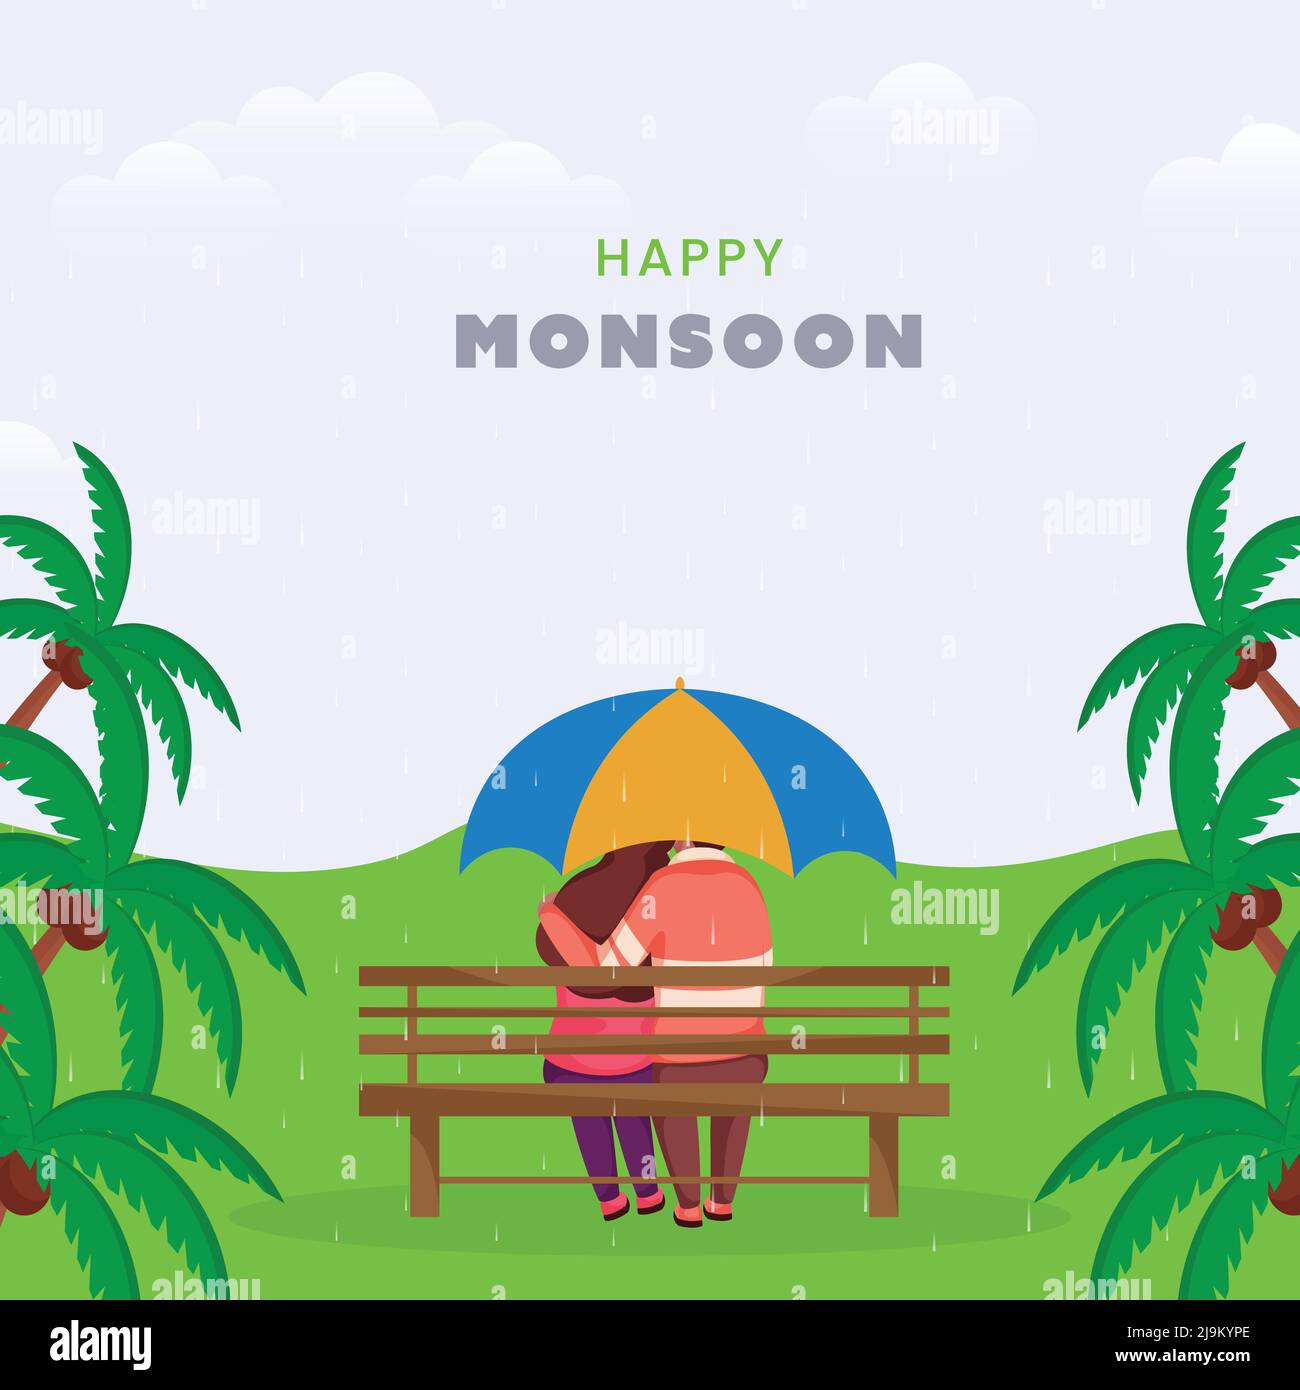 Happy Monsoon Poster Design Mit Rückansicht Eines Jungen Paares, Das Unter Dem Regenschirm Auf Der Bank Sitzt, Und Kokosnussbäumen Auf Dem Niederschlagshintergrund. Stock Vektor